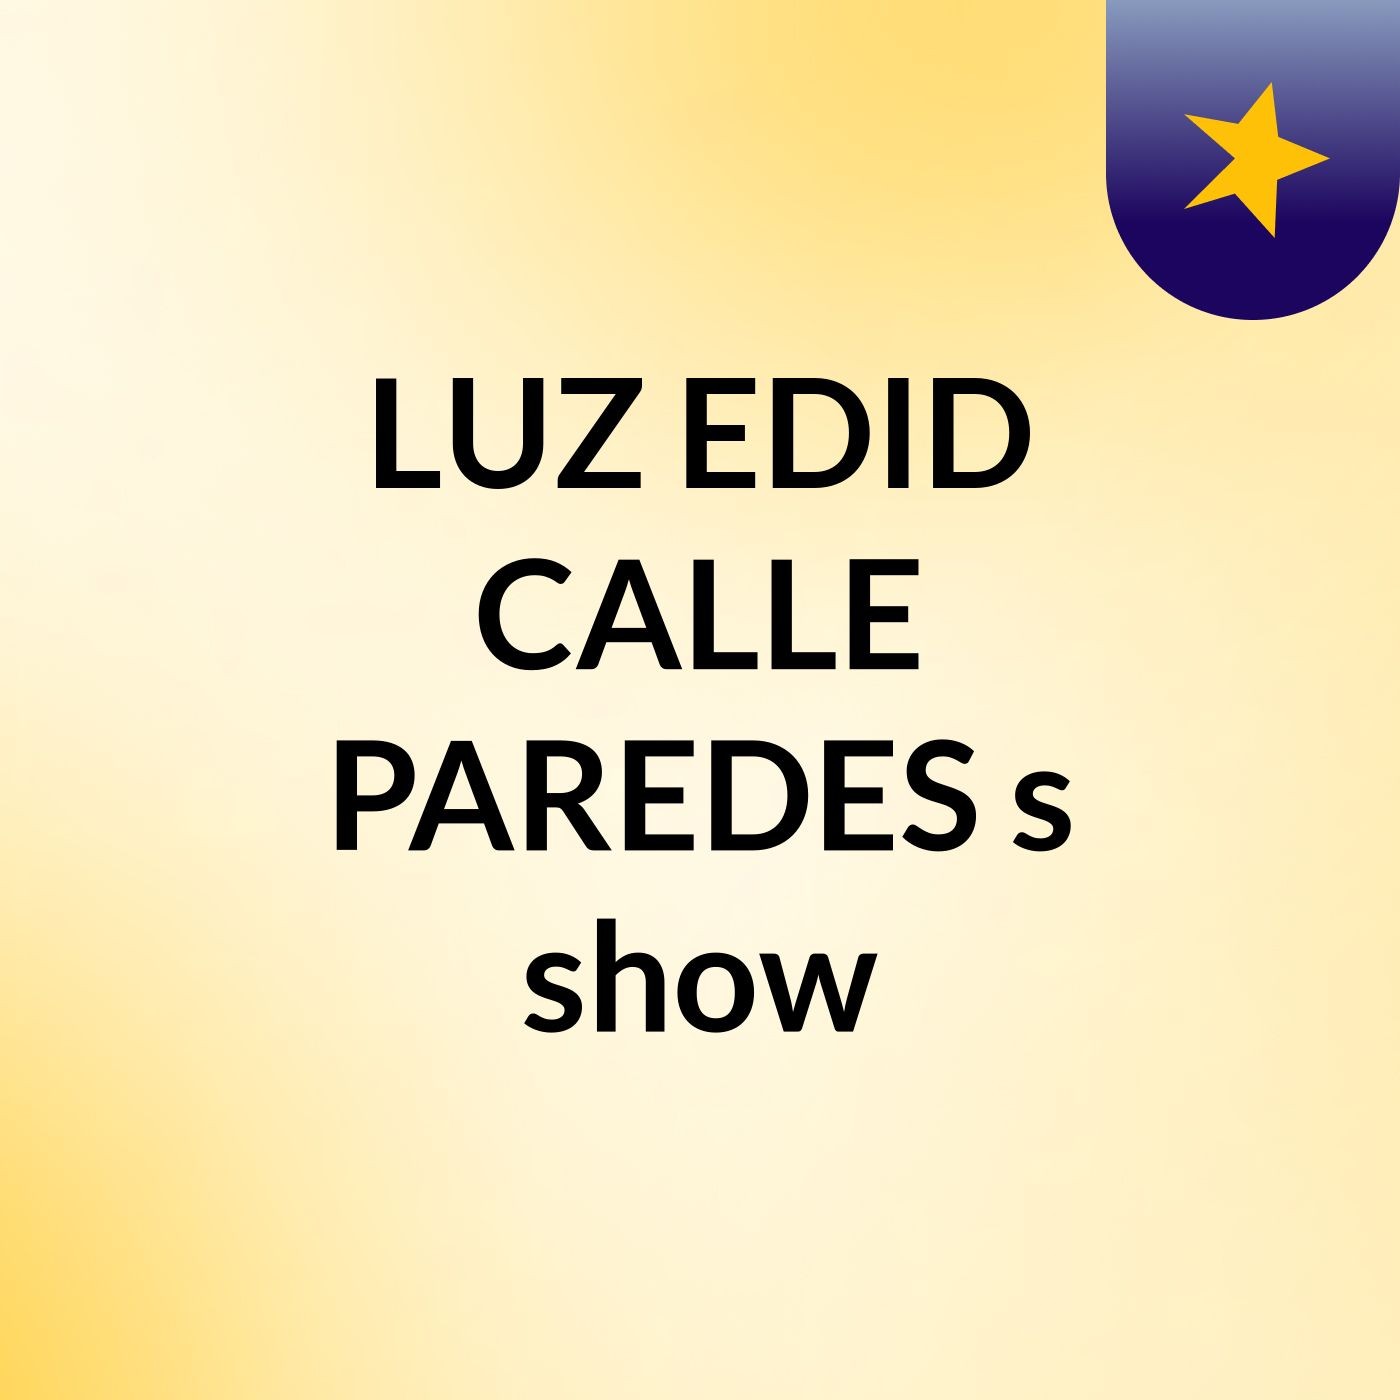 LUZ EDID CALLE PAREDES's show